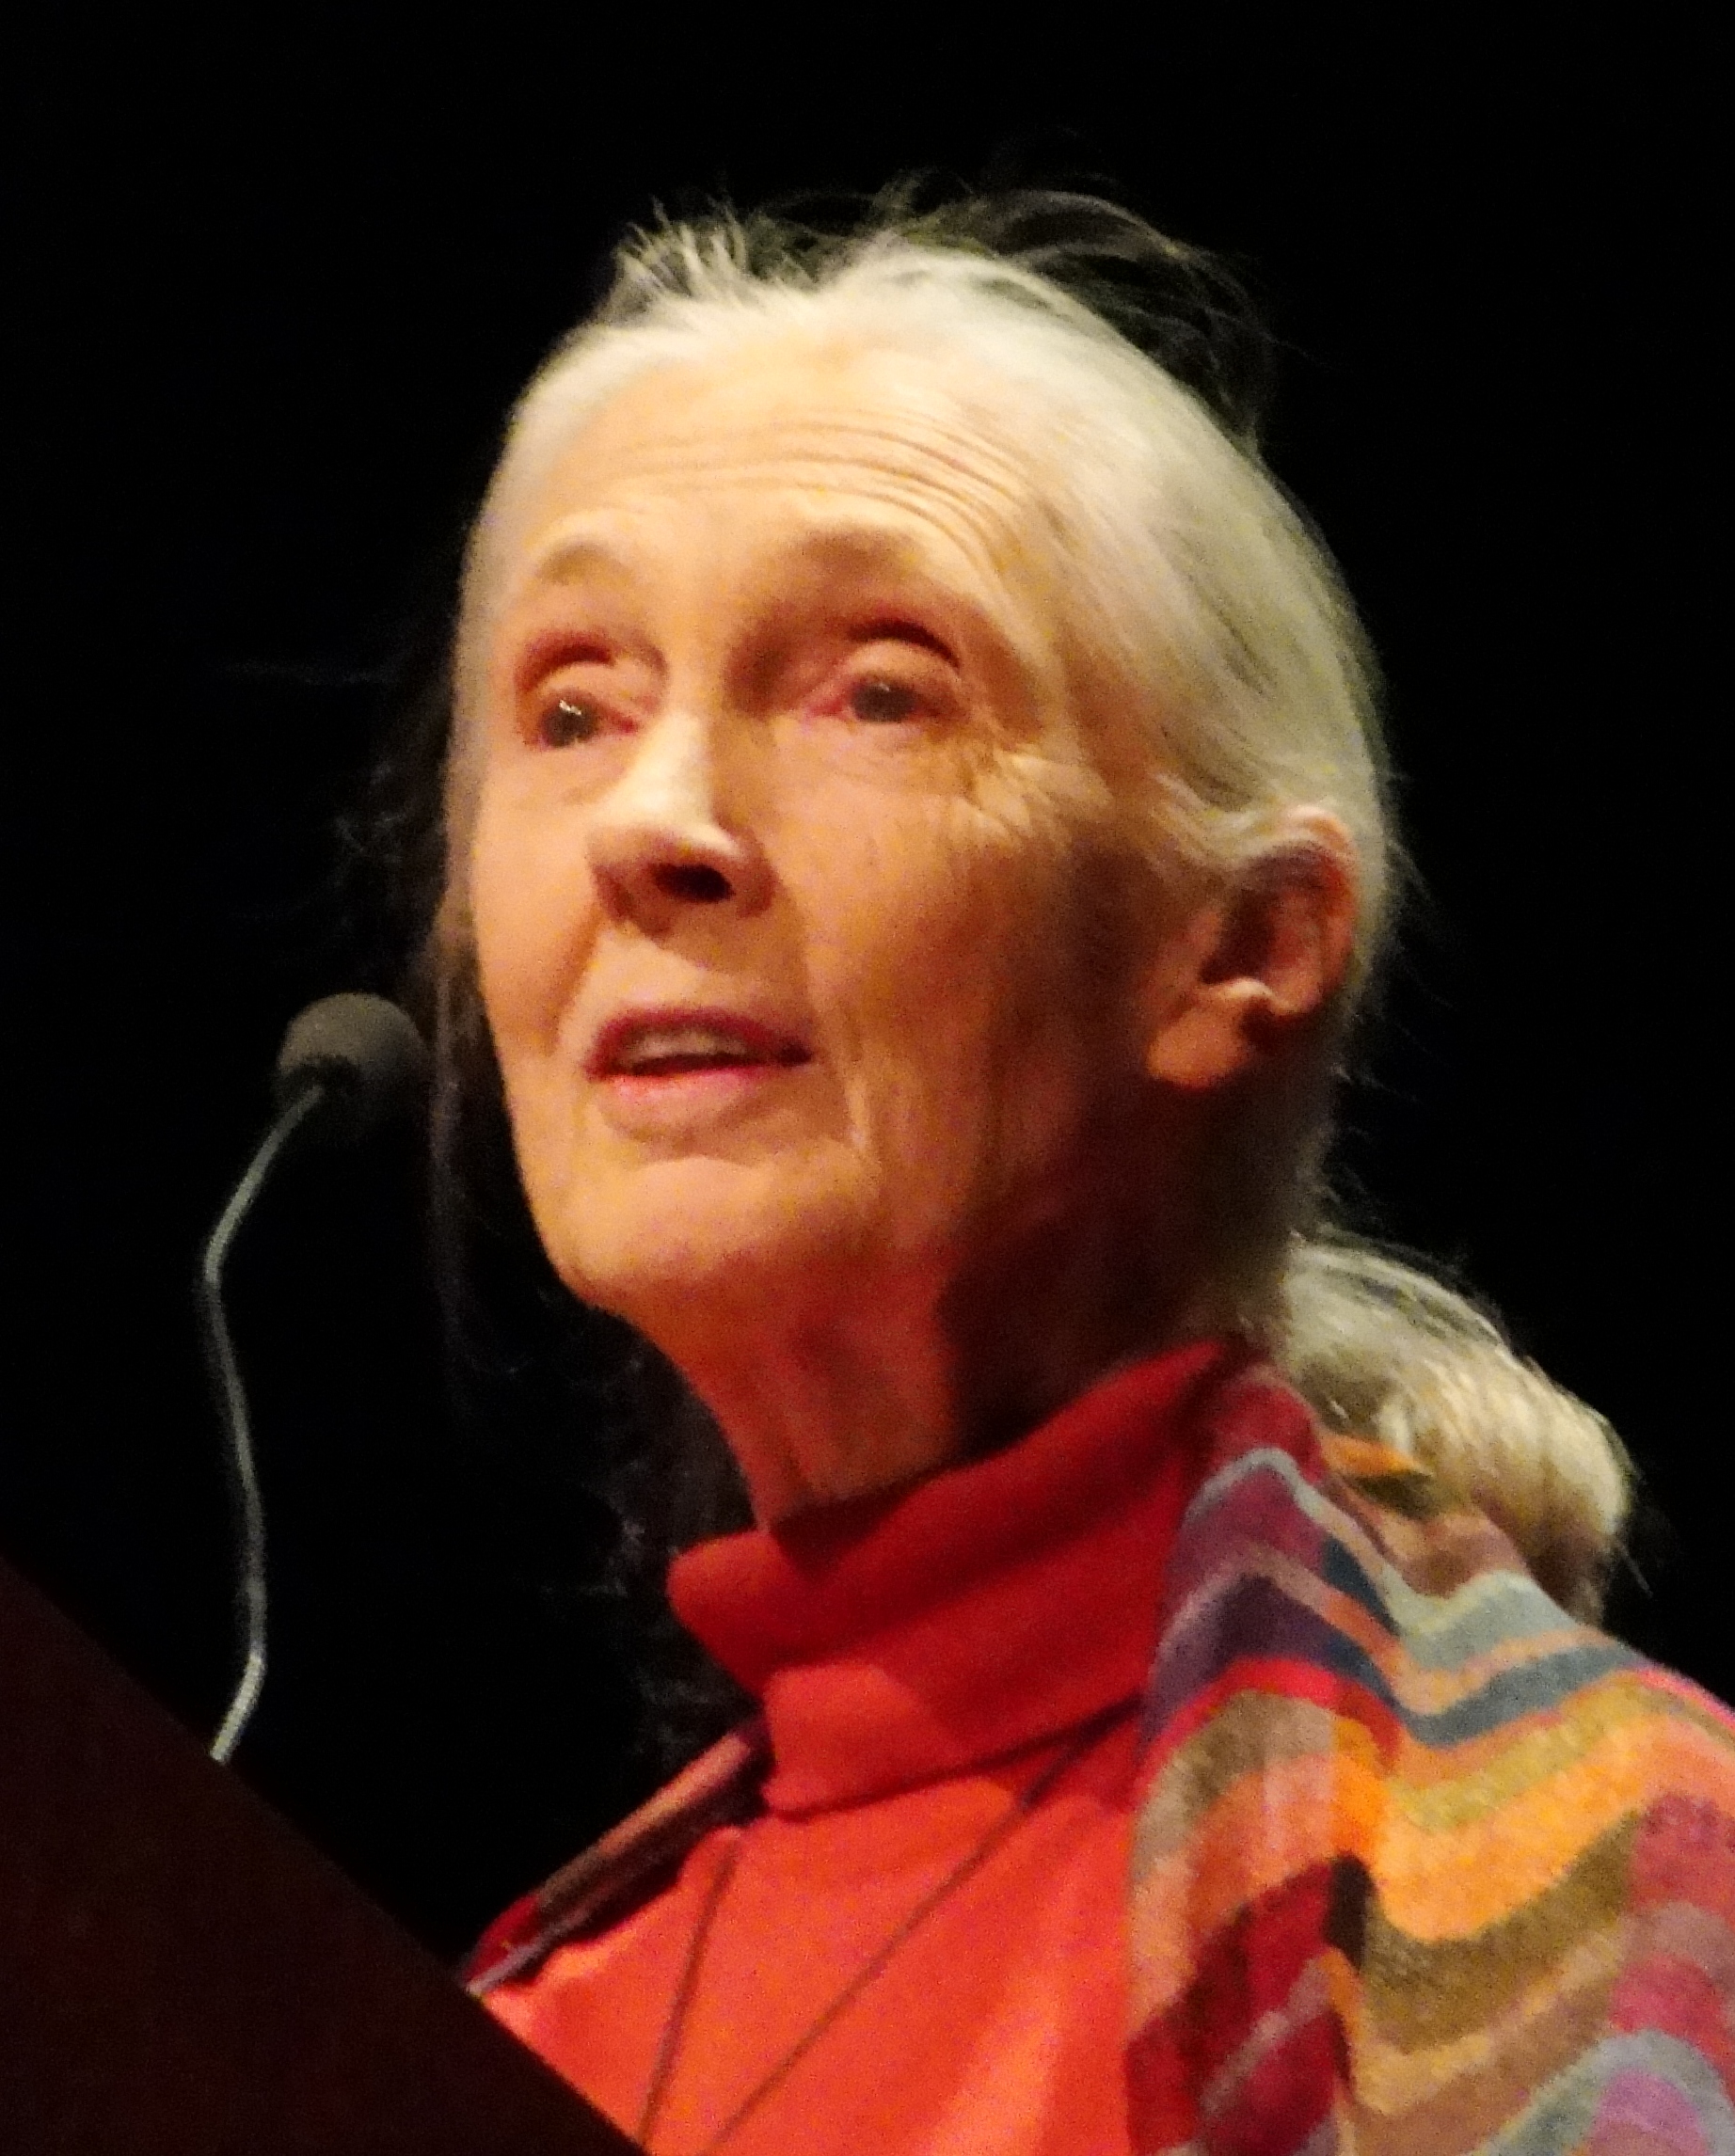 Poze Jane Goodall - Actor - Poza 5 din 5 - CineMagia.ro